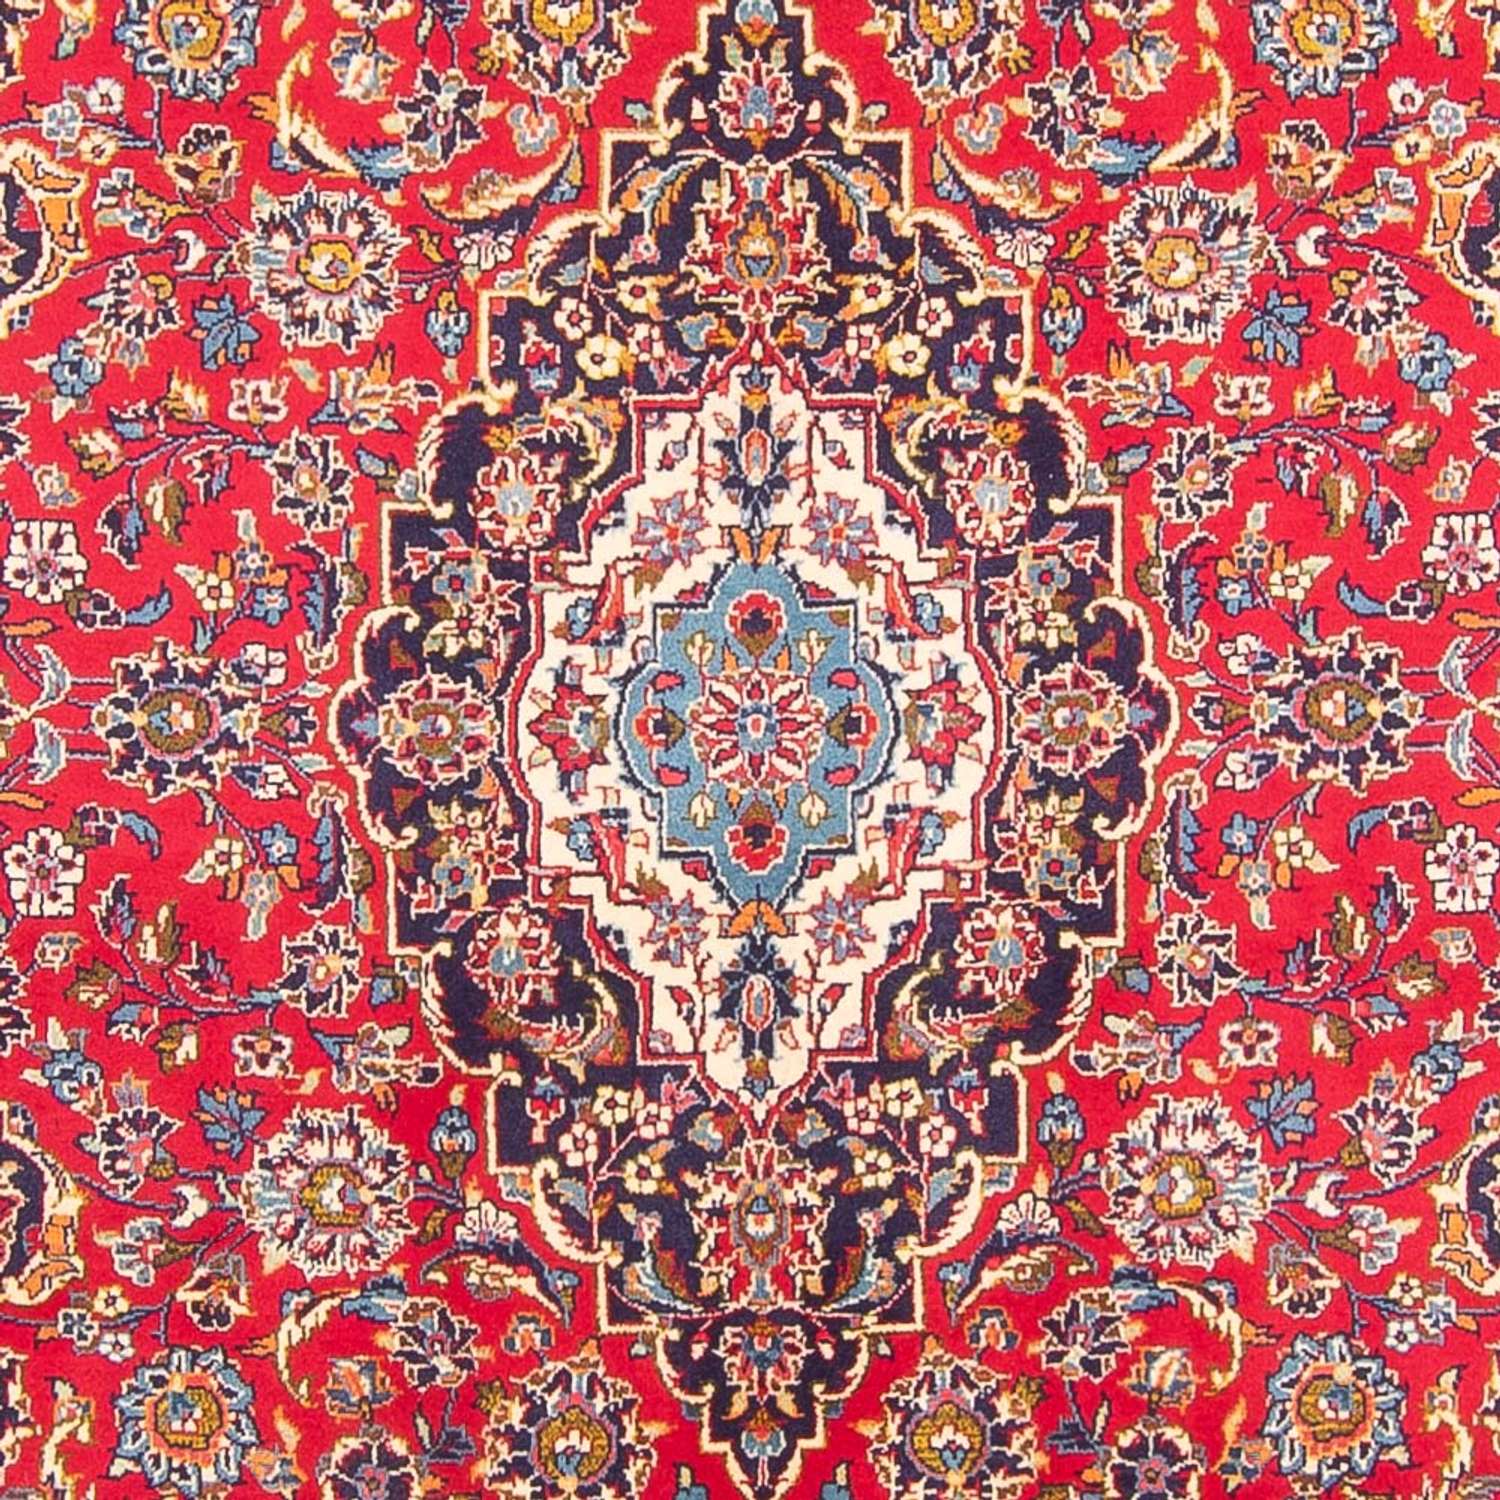 Persiska mattor - Keshan - 297 x 194 cm - röd